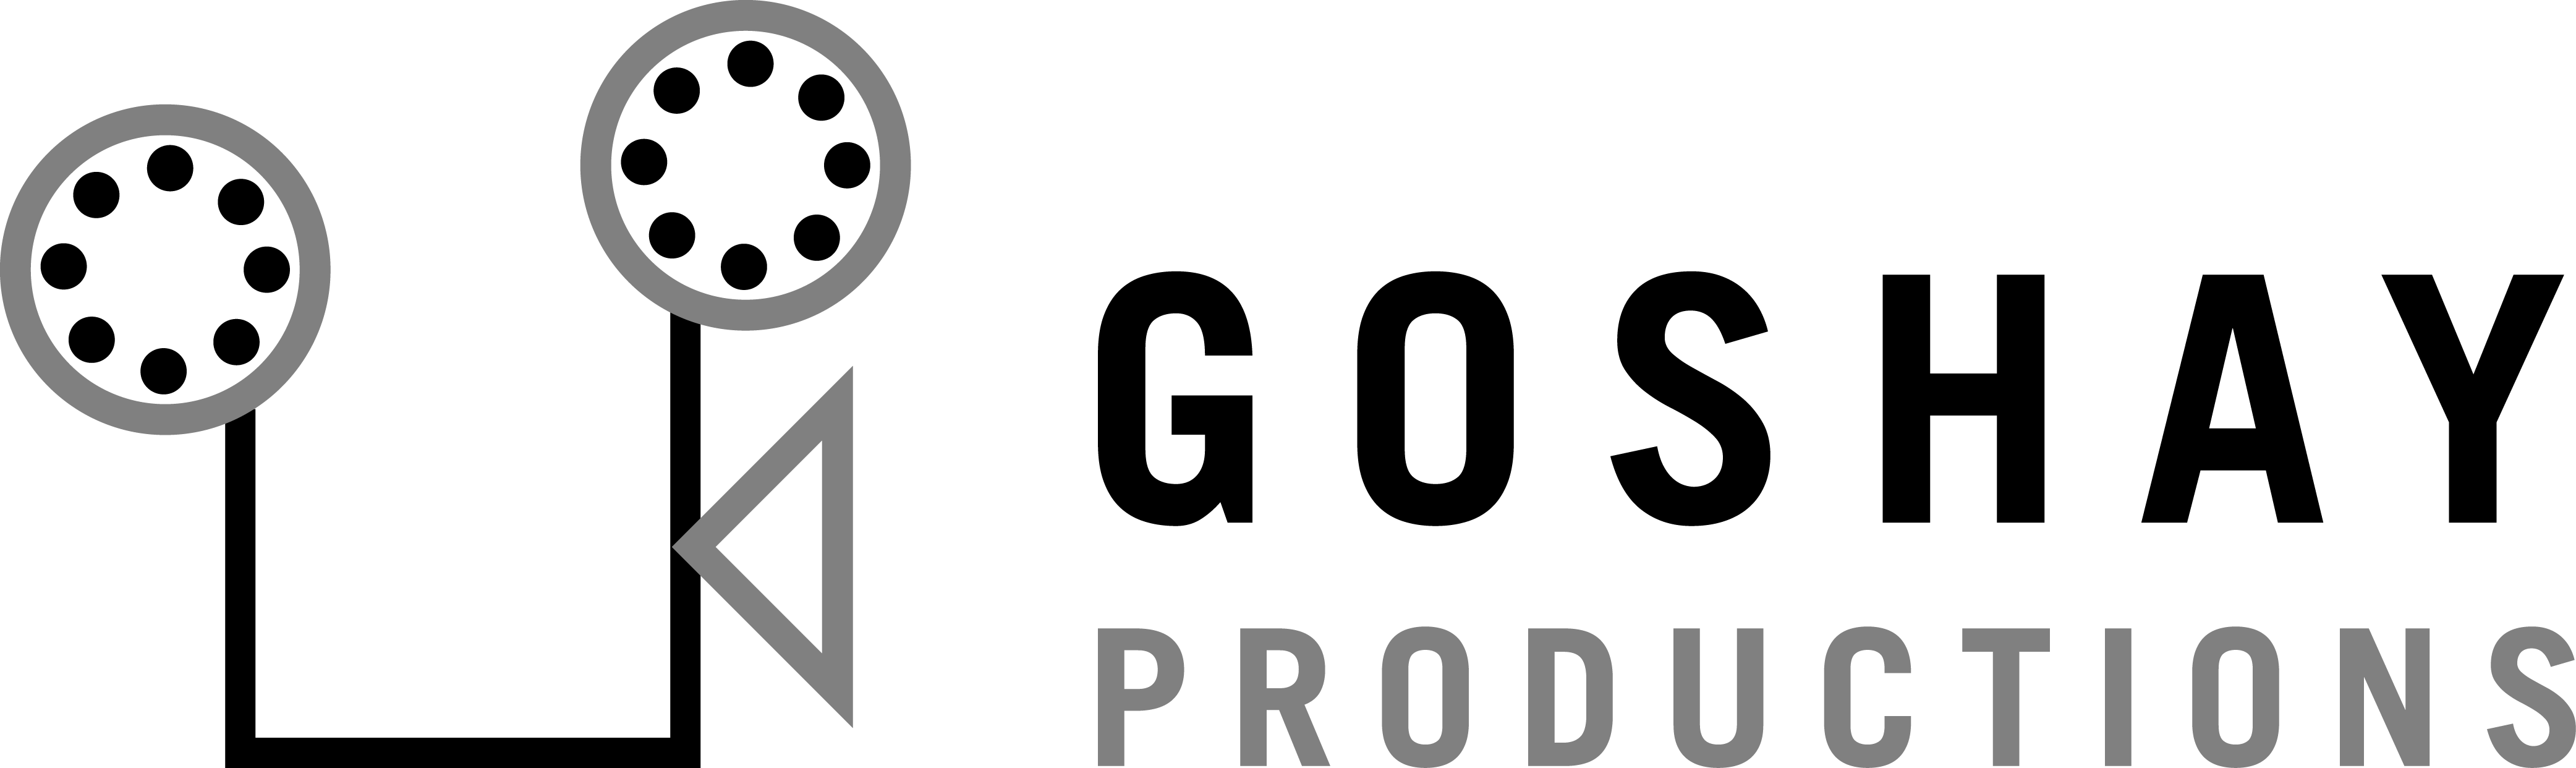 logo-on-white